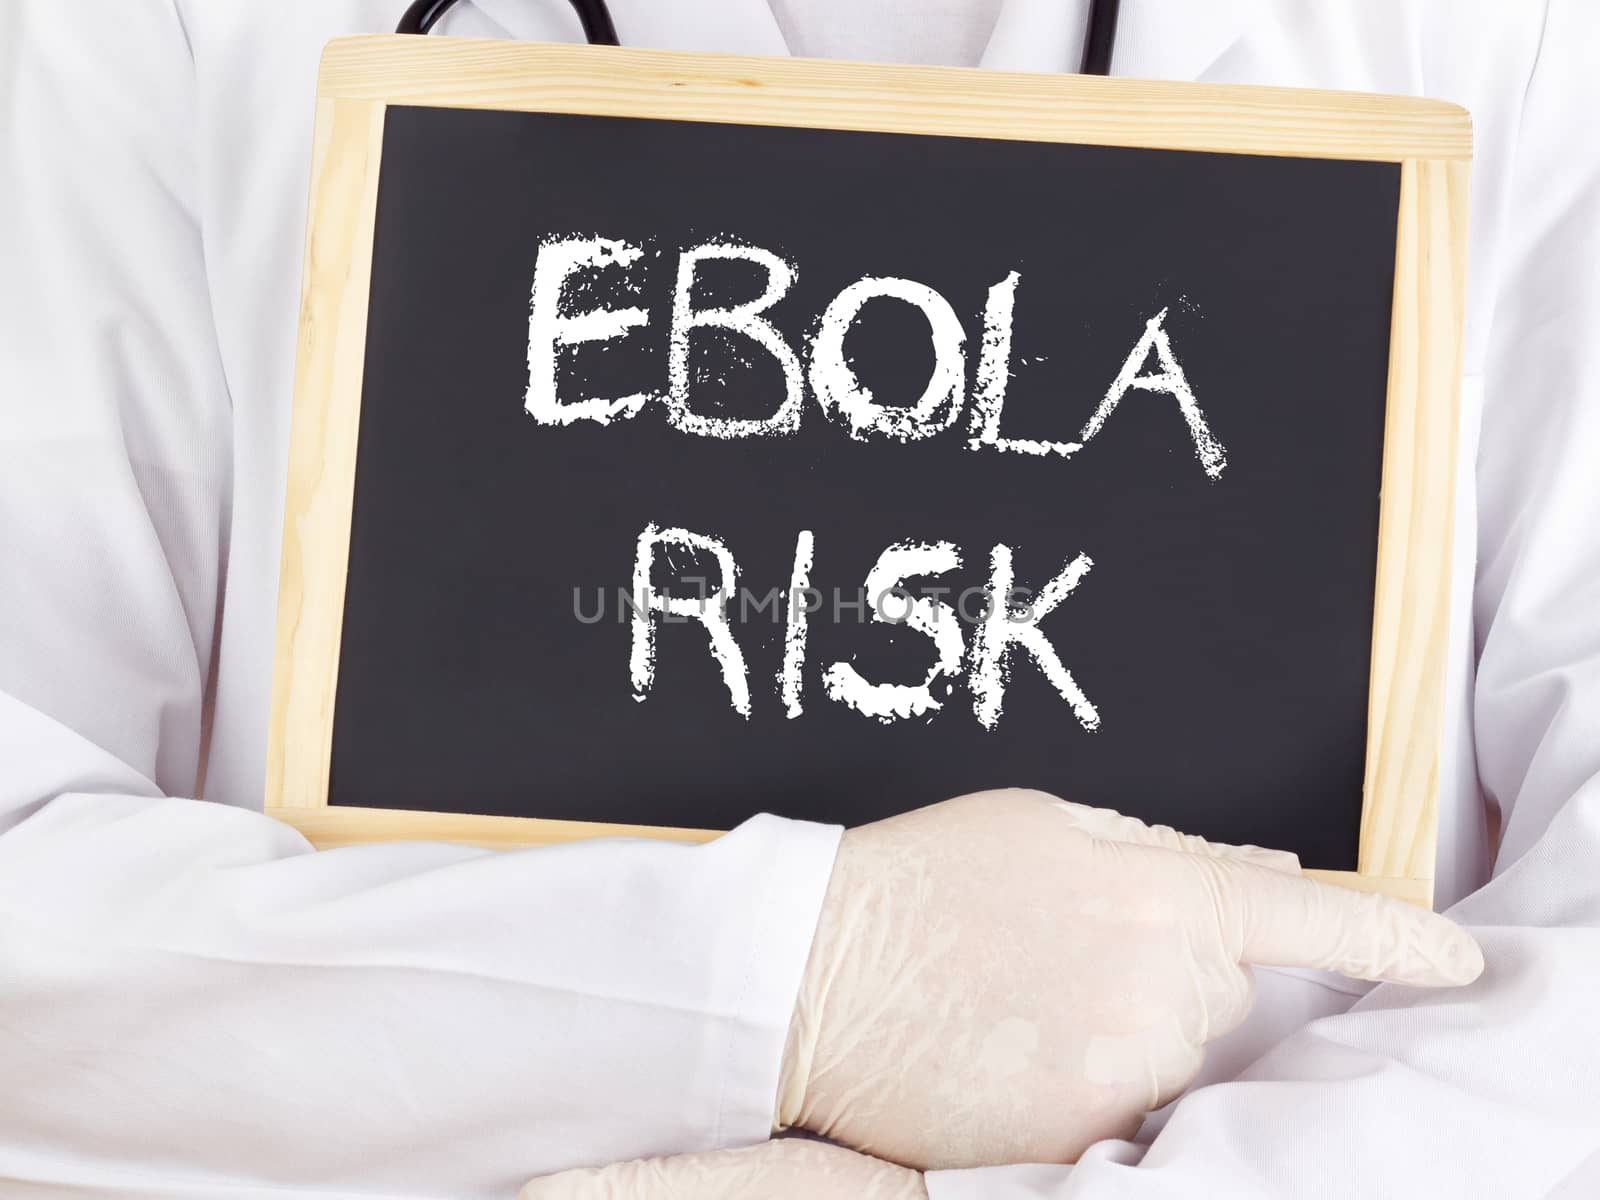 Doctor shows information: Ebola risk